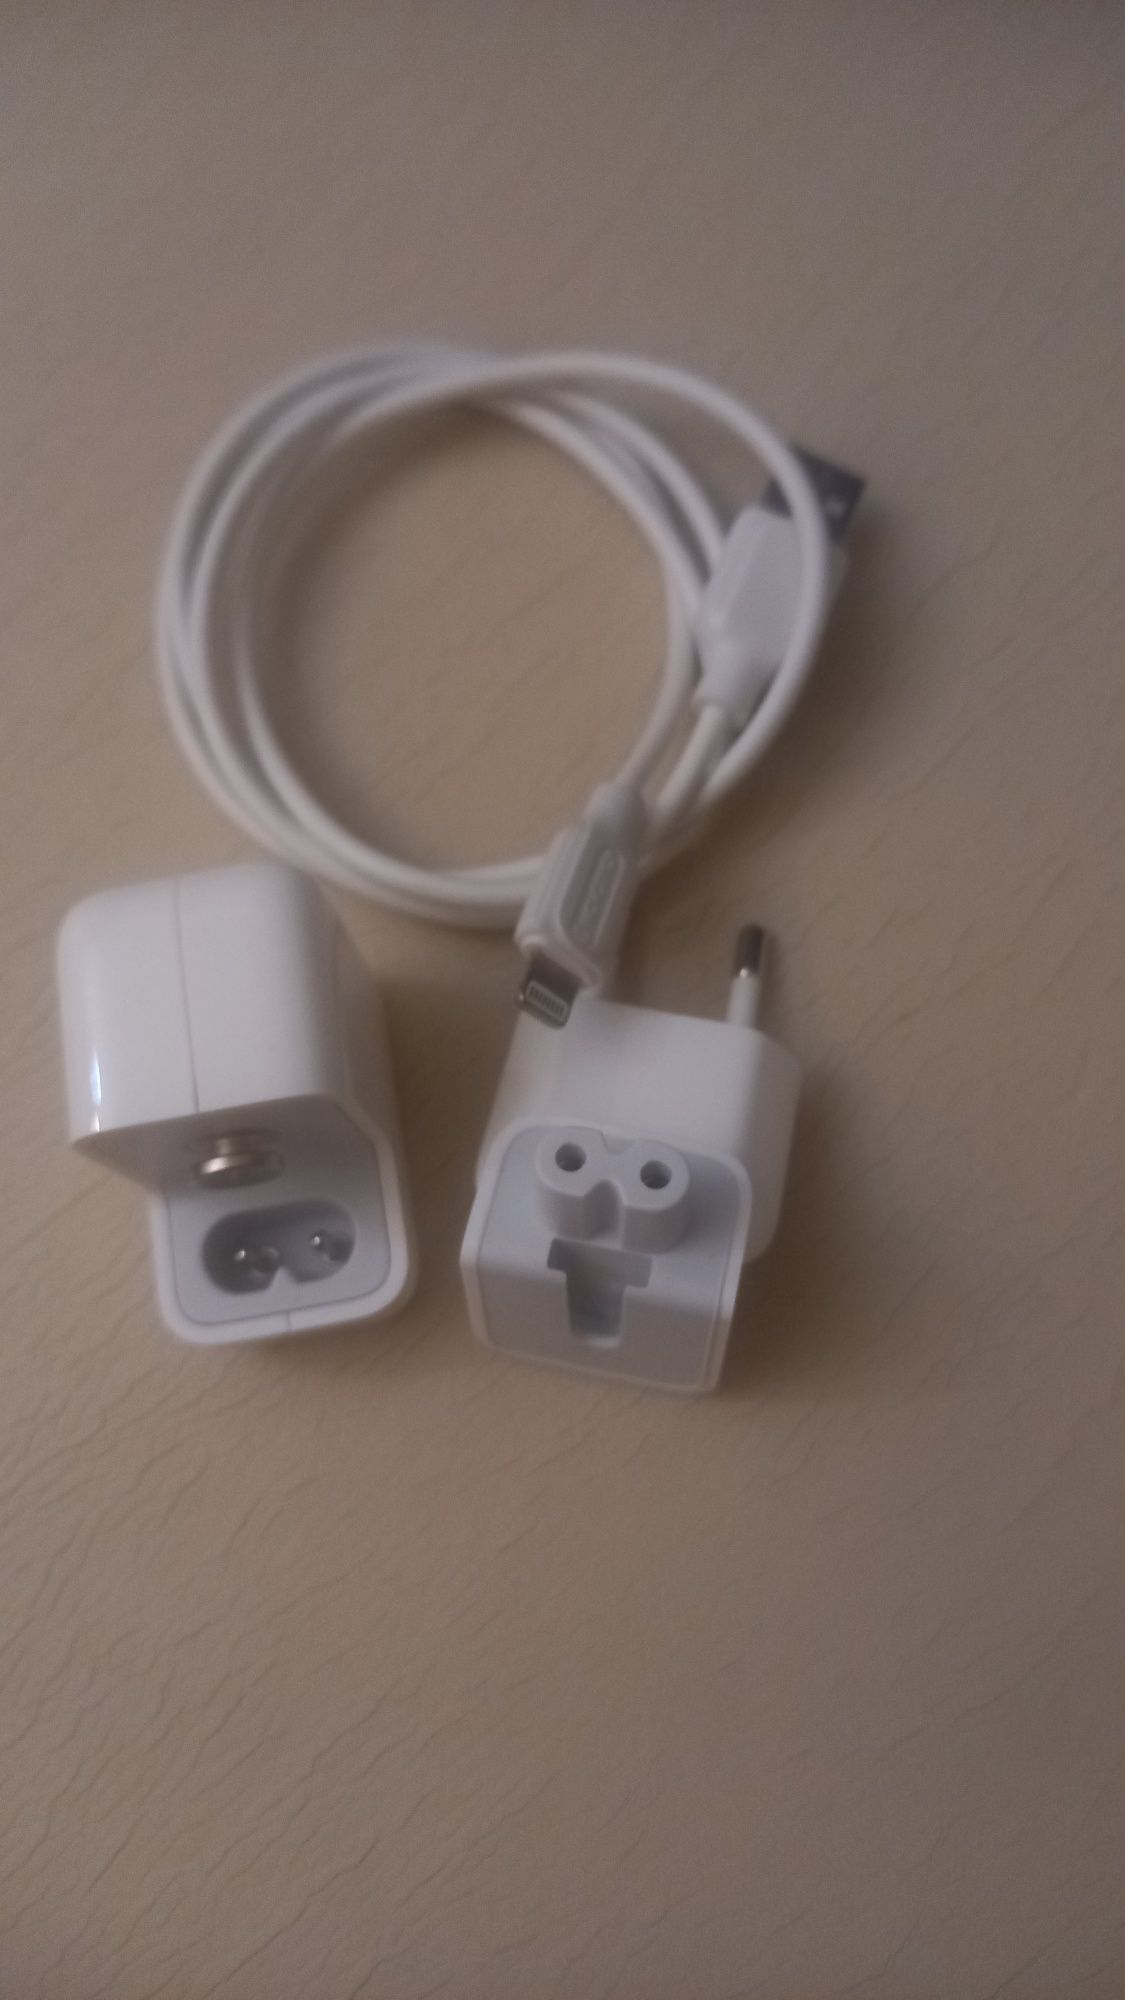 Carregador Apple Lightnig original com cabo USB